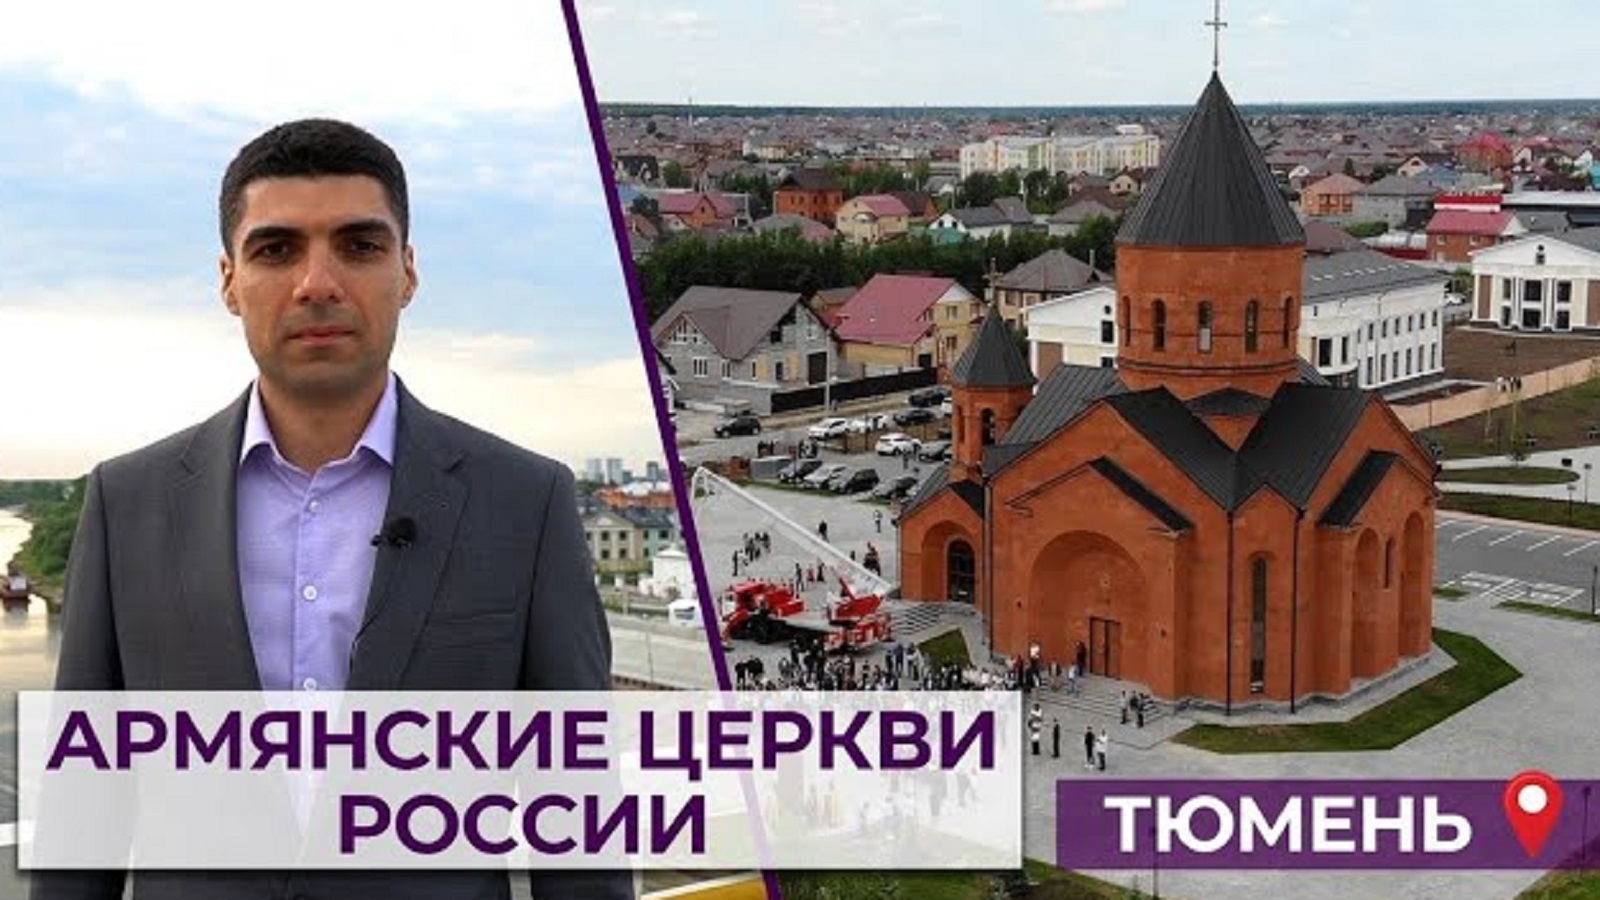 Армянские церкви России | Тюмень